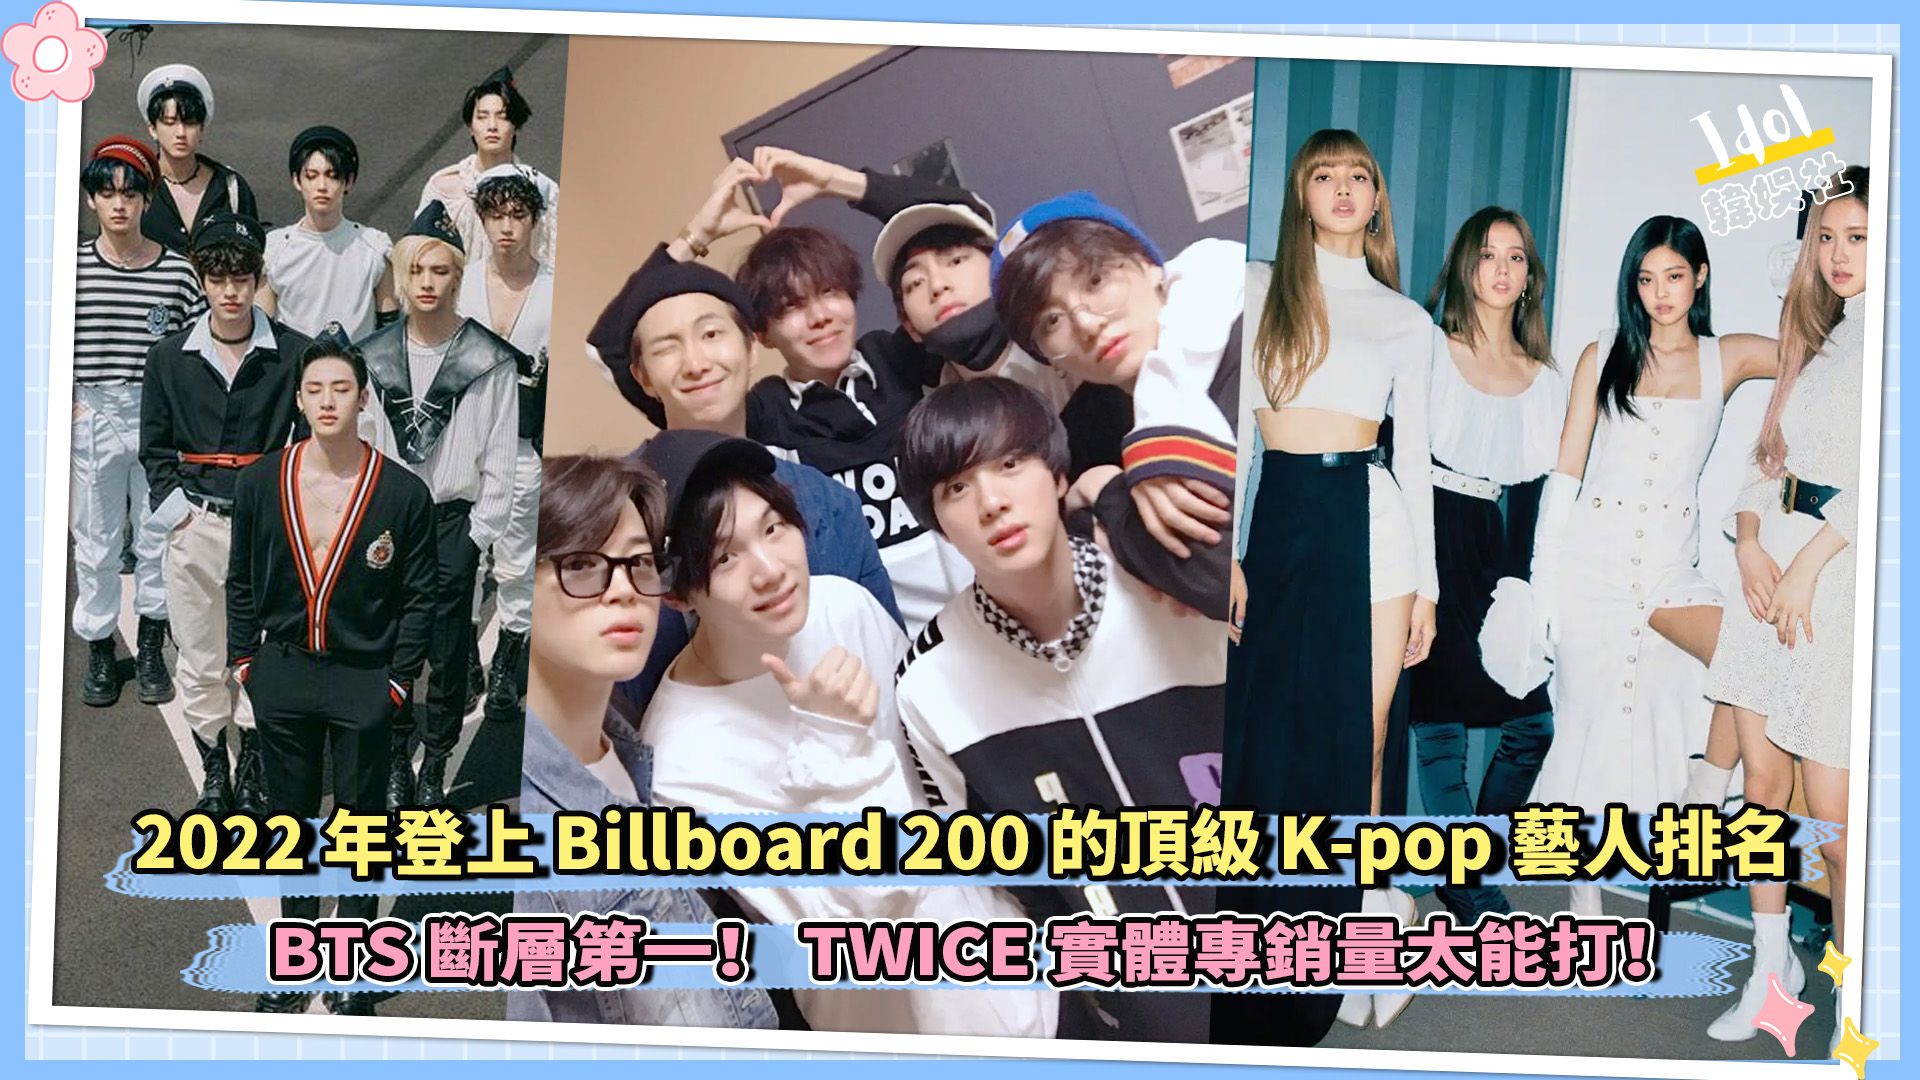 2022年登上Billboard 200的顶级K-pop艺人排名 BTS断层第一！TWICE实体专销量太能打！